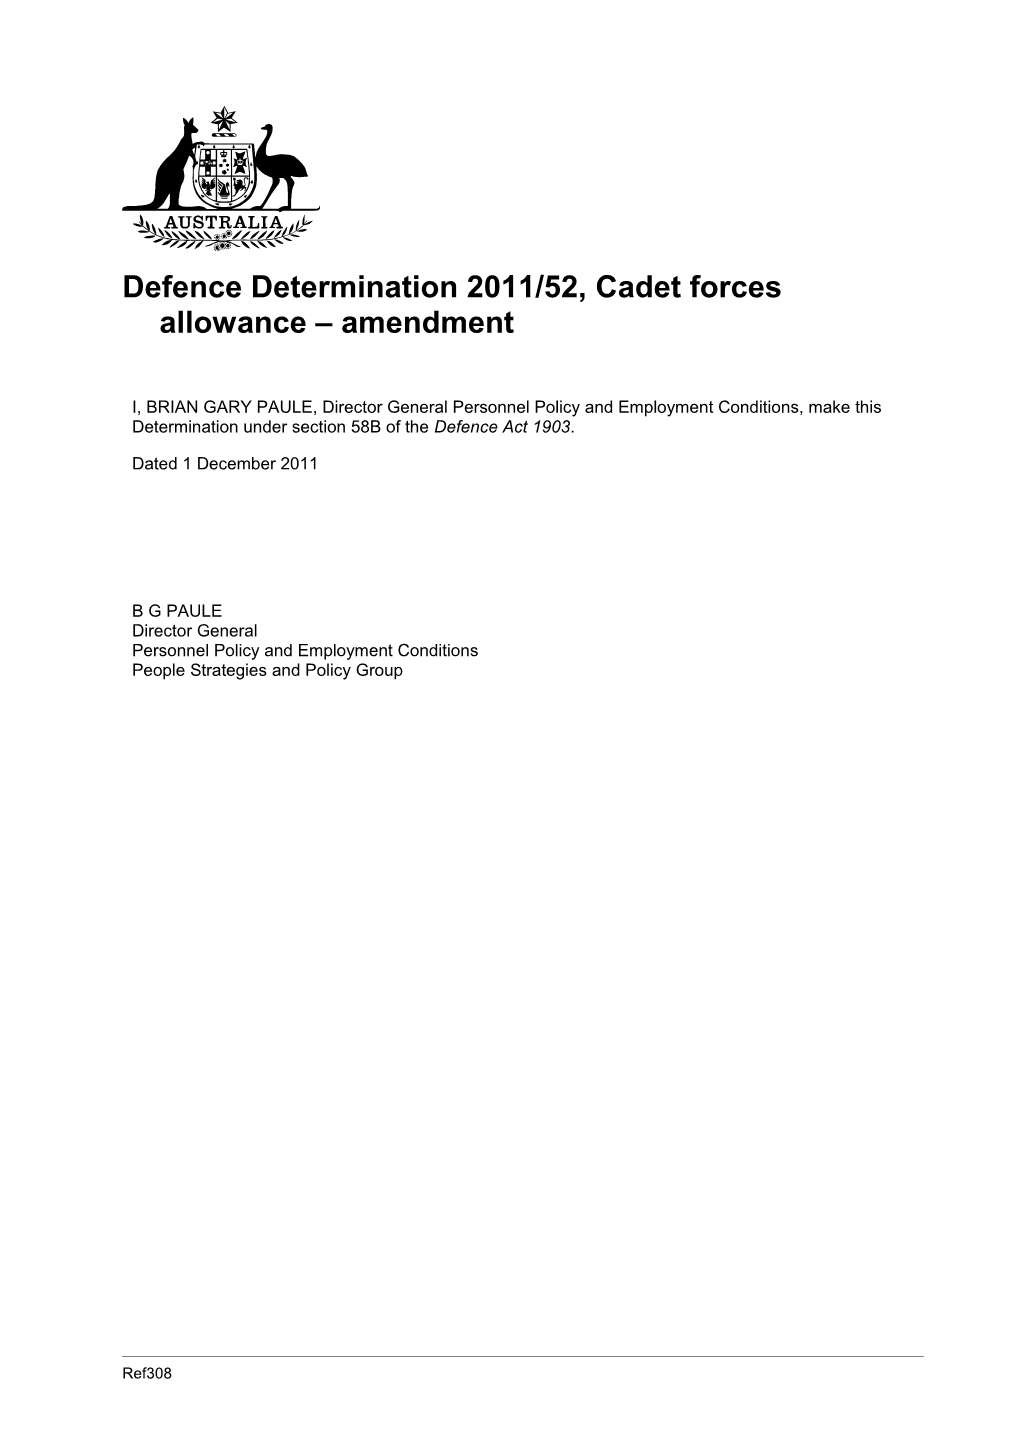 Defence Determination 2011/52, Cadet Forces Allowance Amendment